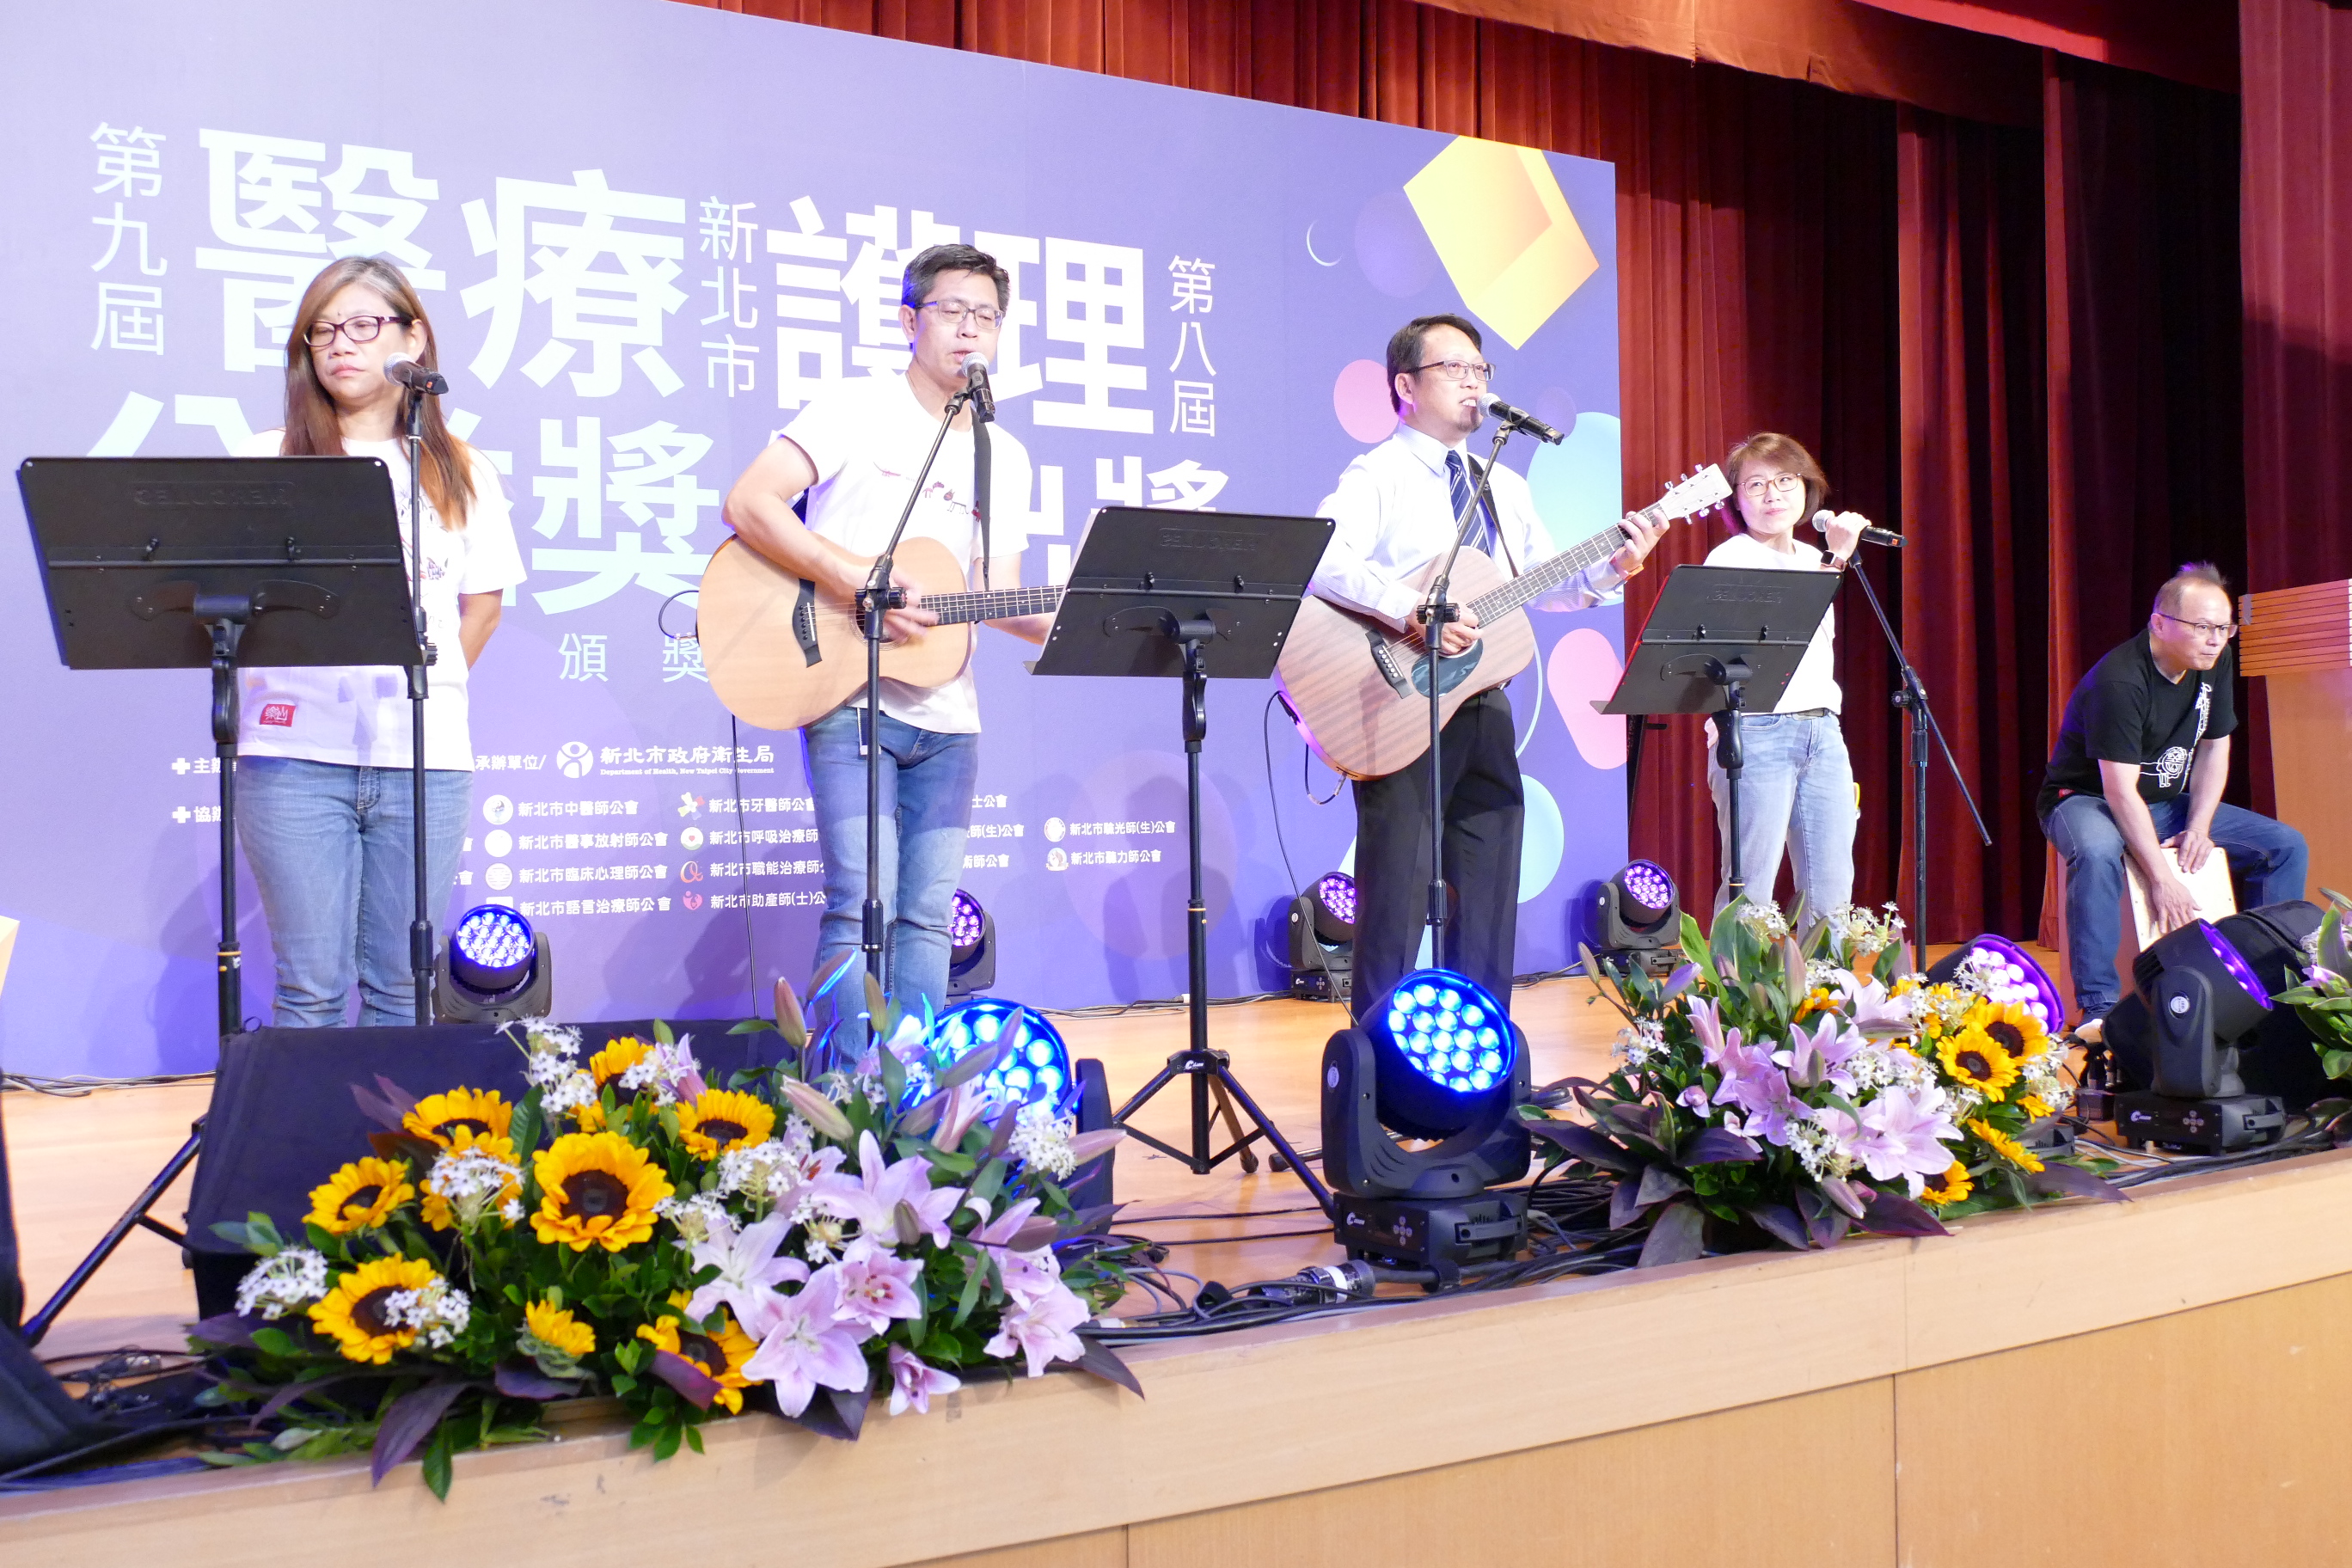 張晉賢中醫師所創辦的微微風樂壇也擔任本次頒獎典禮的表演嘉賓